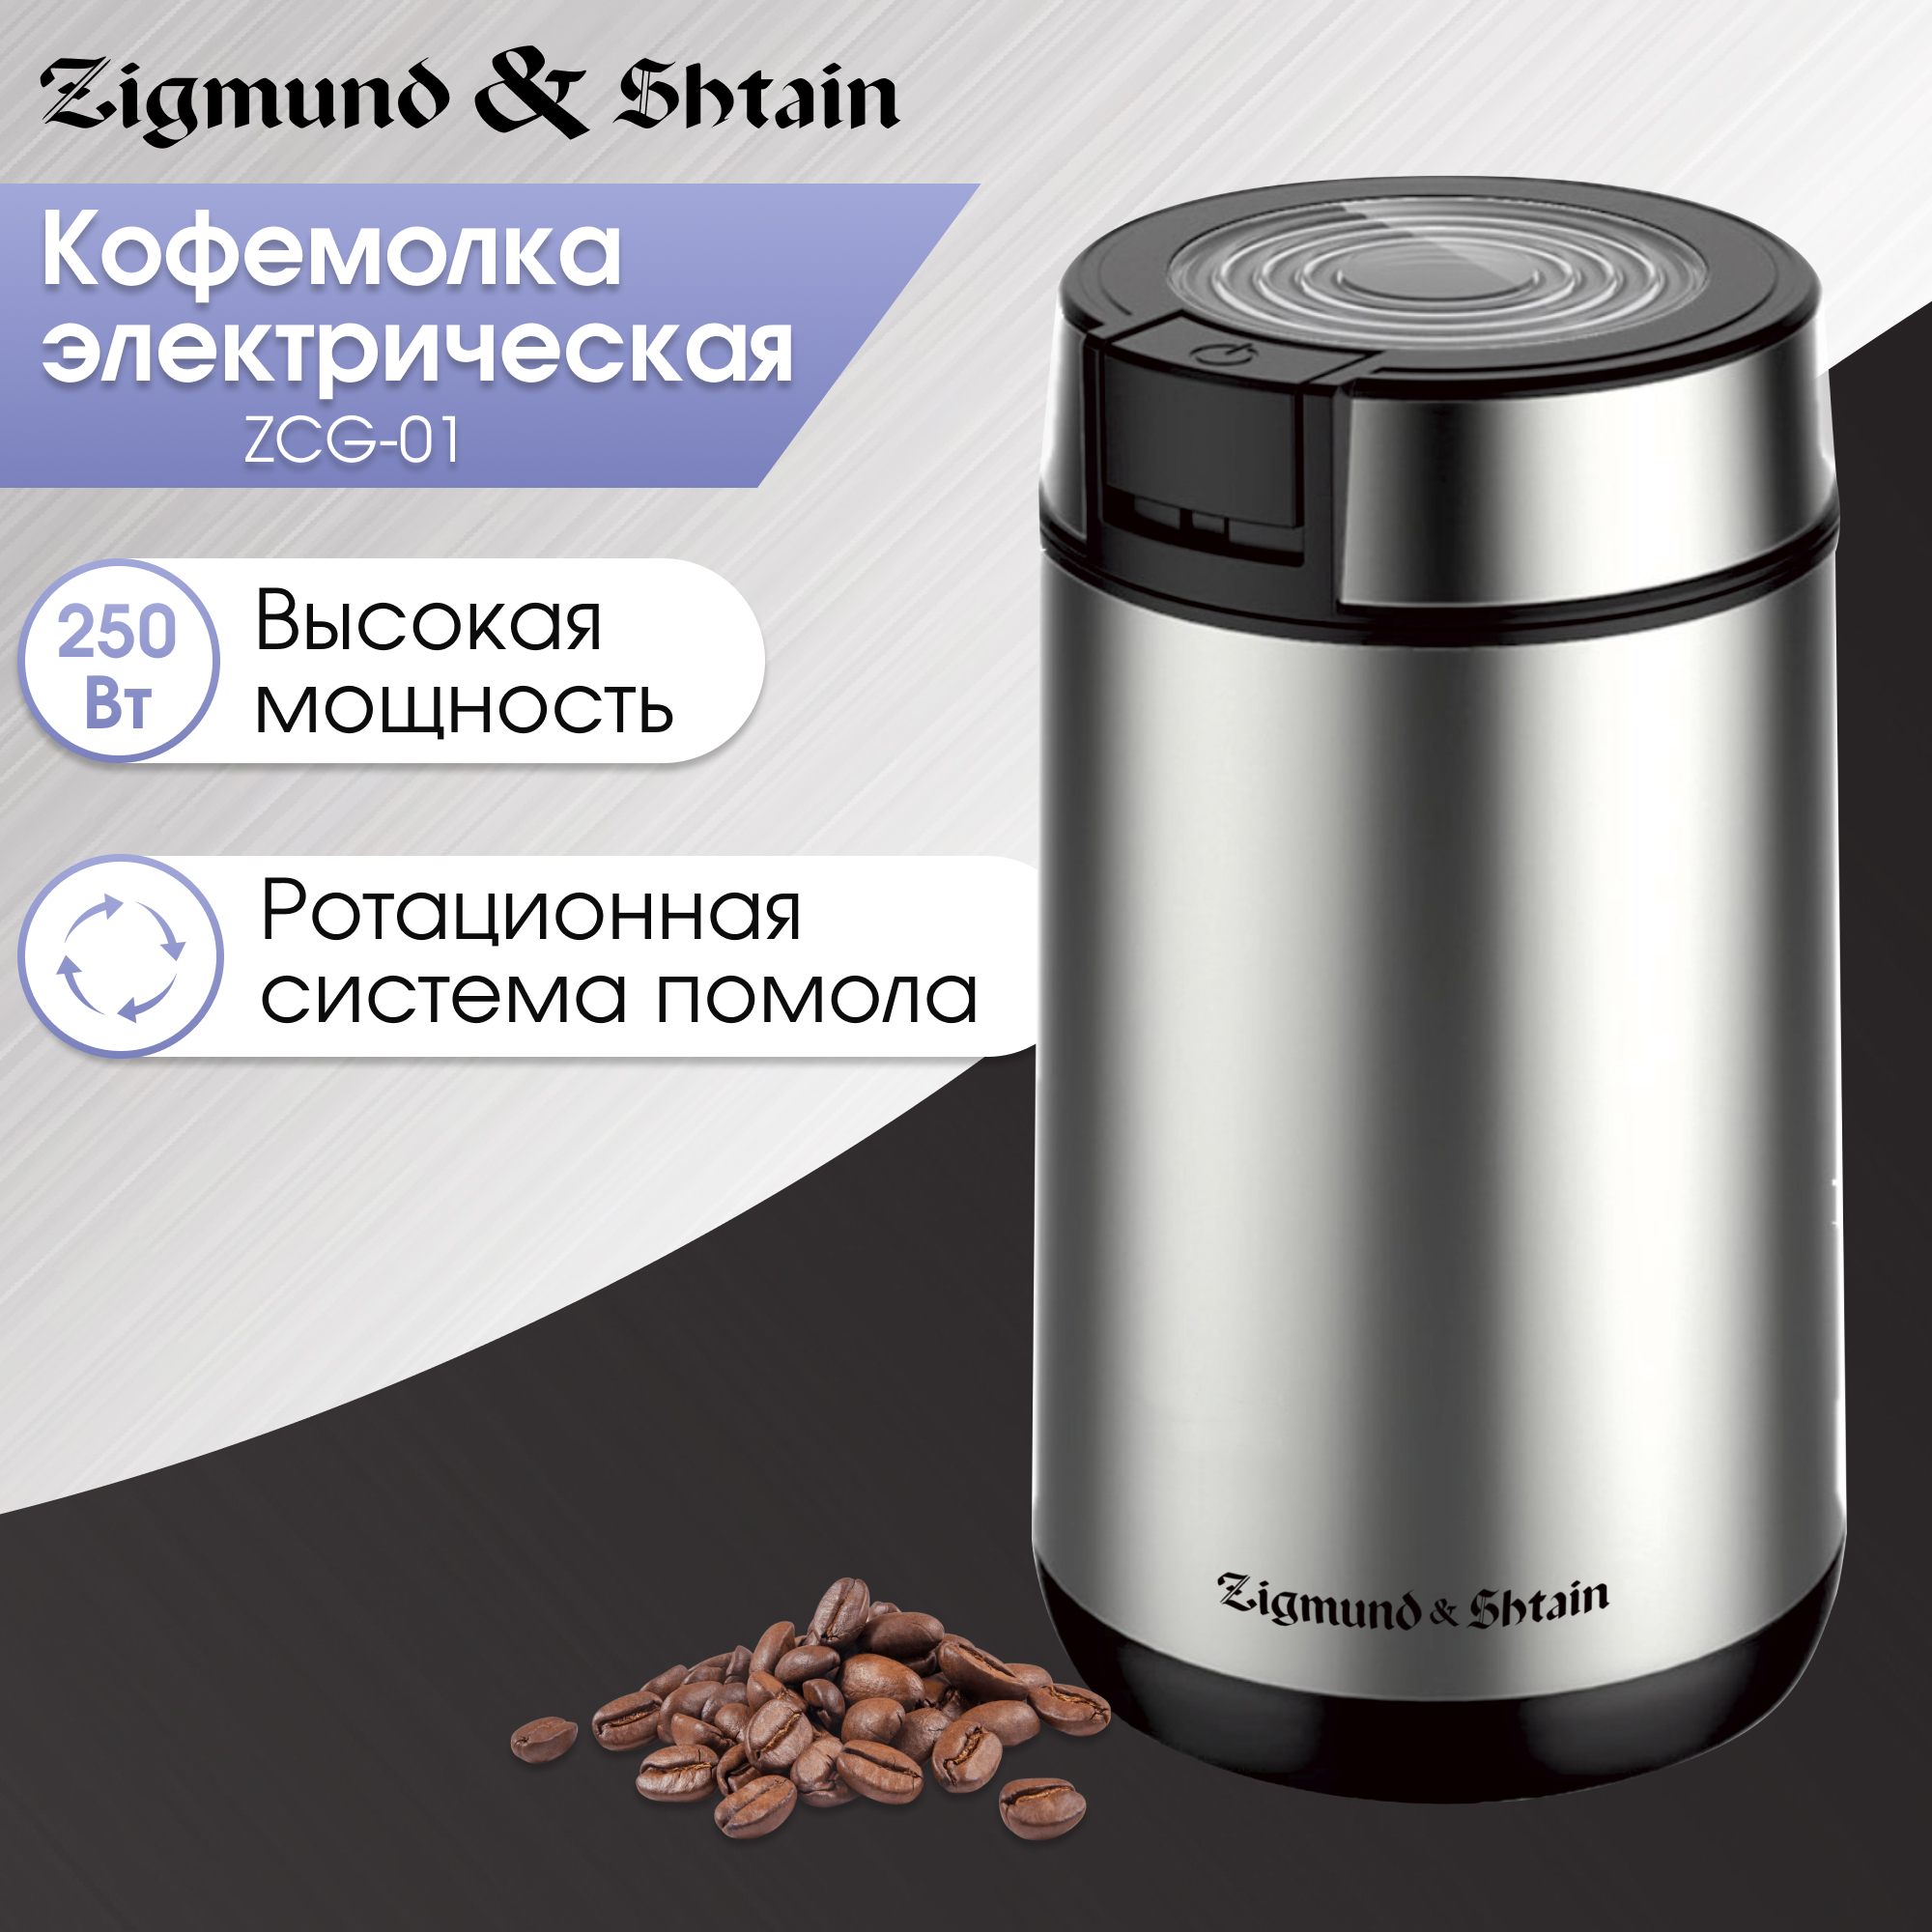 Кофемолка Zigmund & Shtain ZCG-01 серебристый, серый кофемолка kitfort кт 746 электрическая ножевая 200 вт 0 2 л серебристая